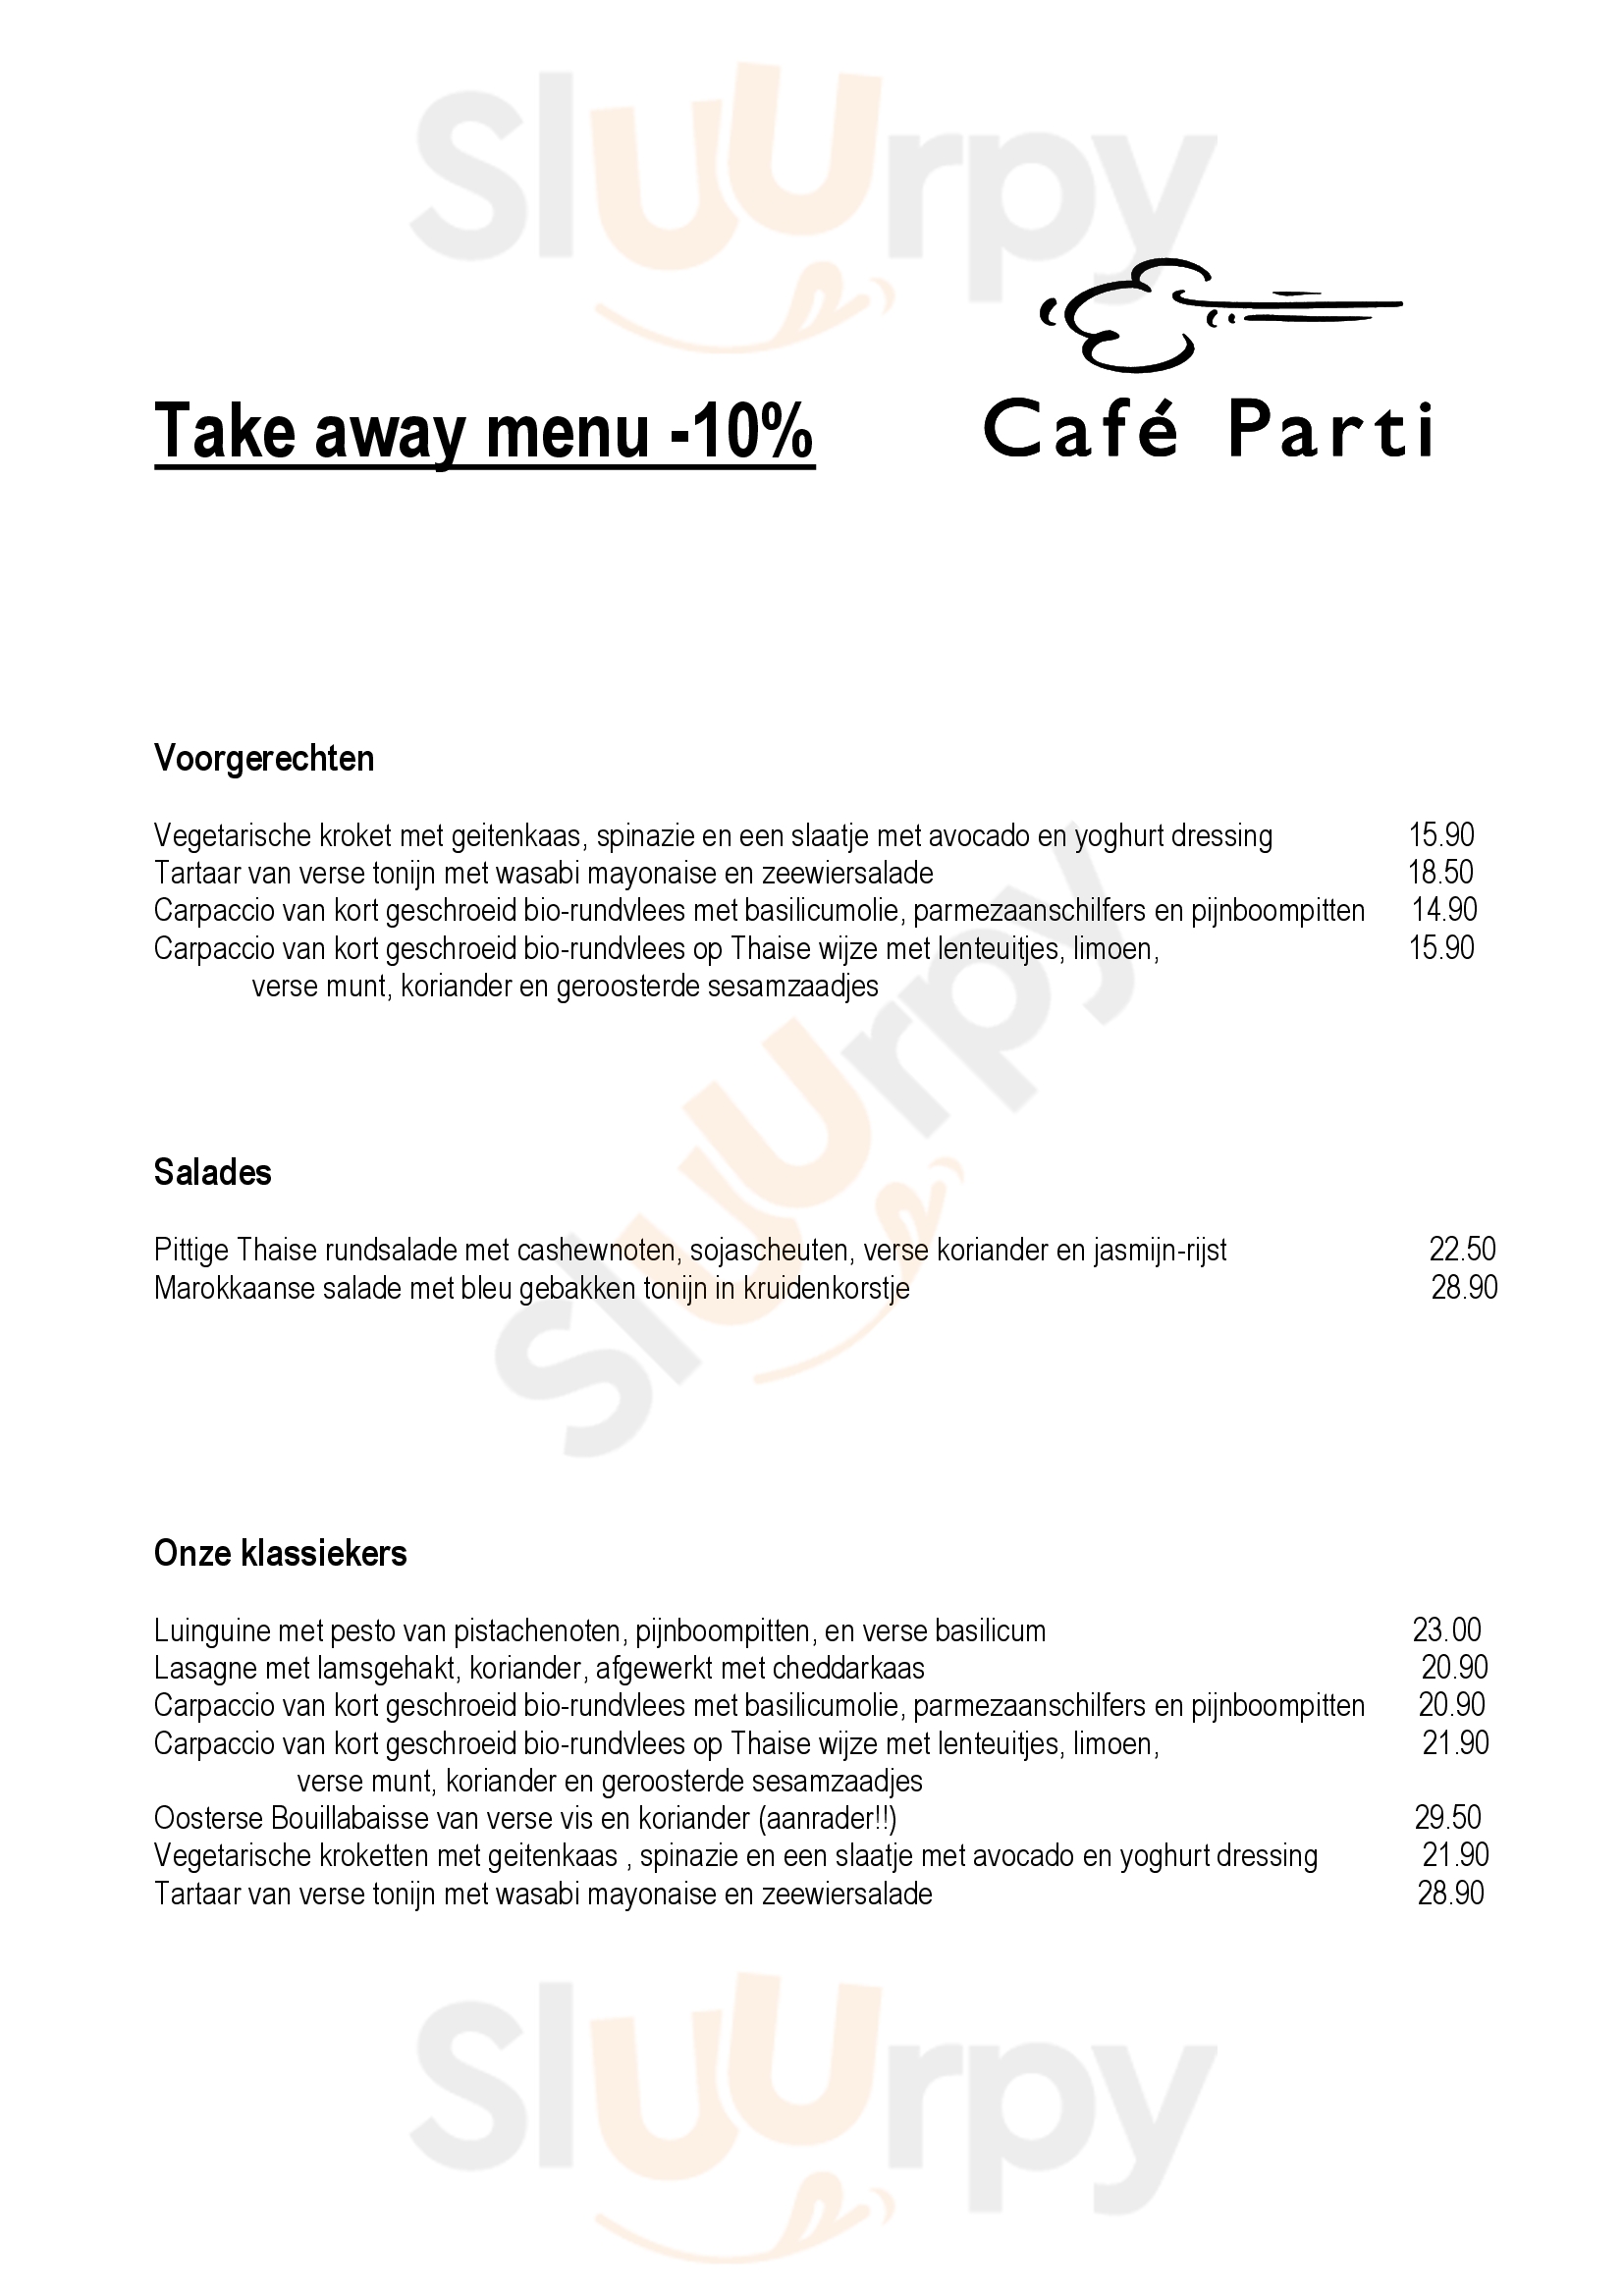 Cafe Parti Gand Menu - 1